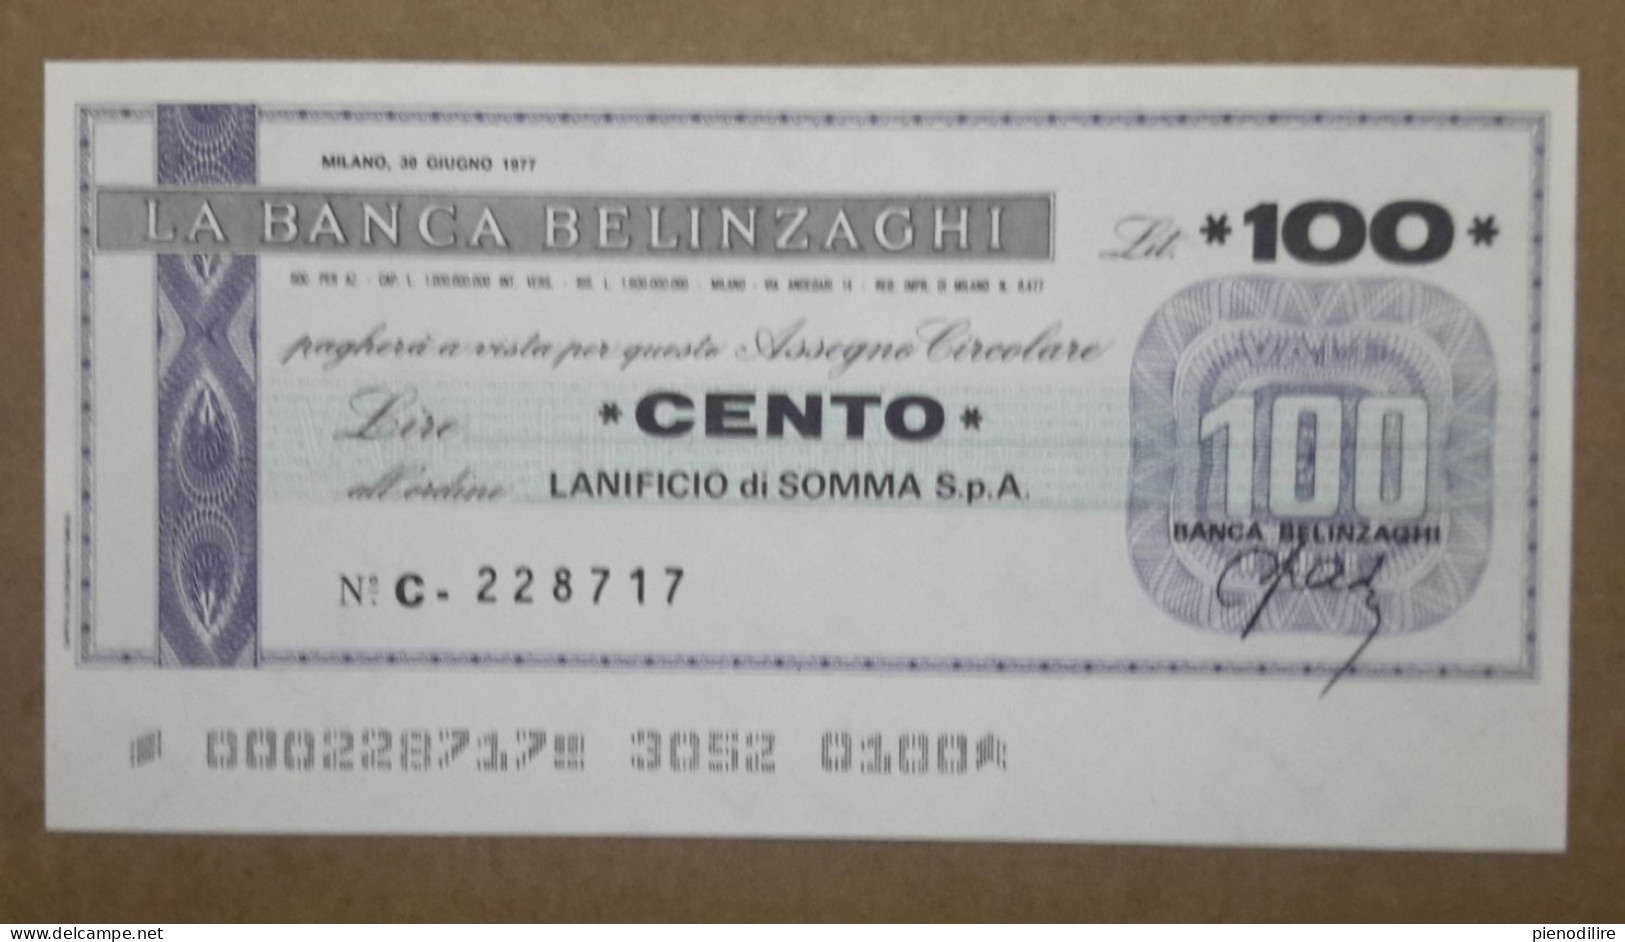 BANCA BELINZAGHI, 100 LIRE 30.06.1977 LANIFICIO SOMMA S.P.A. MILANO (A1.88) - [10] Scheck Und Mini-Scheck